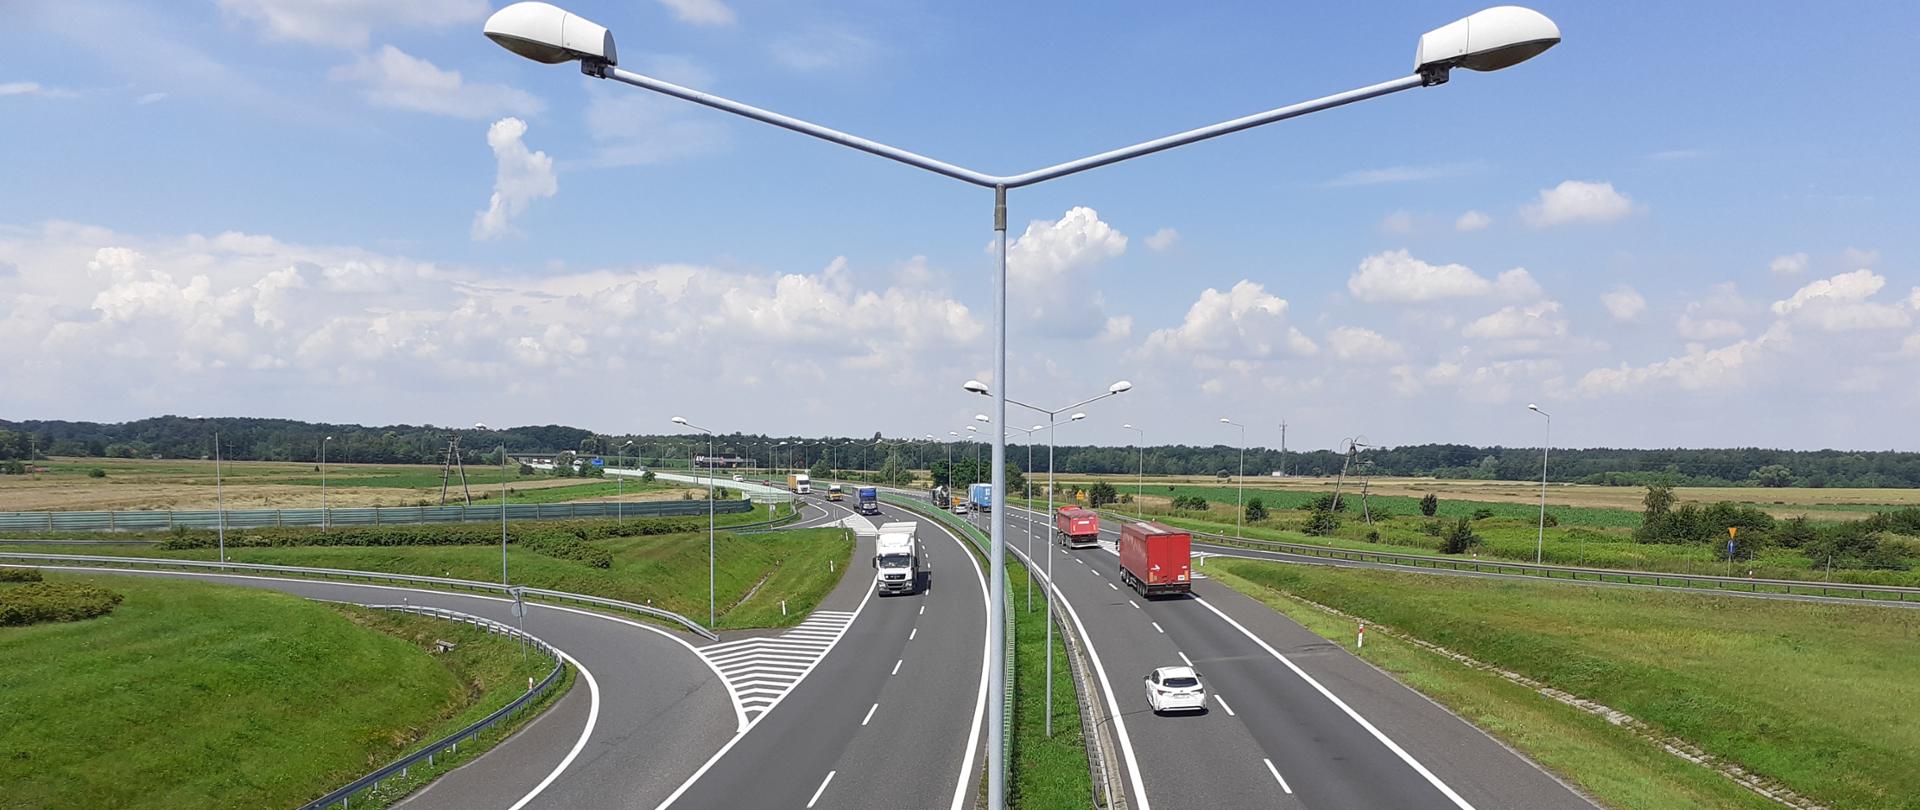 Zdjęcie lotnicze autostrady A4. Na zdjęciu widoczne dwie jezdnie z poruszającymi się po niej pojazdami. Na środku zdjęcia widoczny pas rozdziału z zabudowanymi latarniami oświetlenia drogowego.